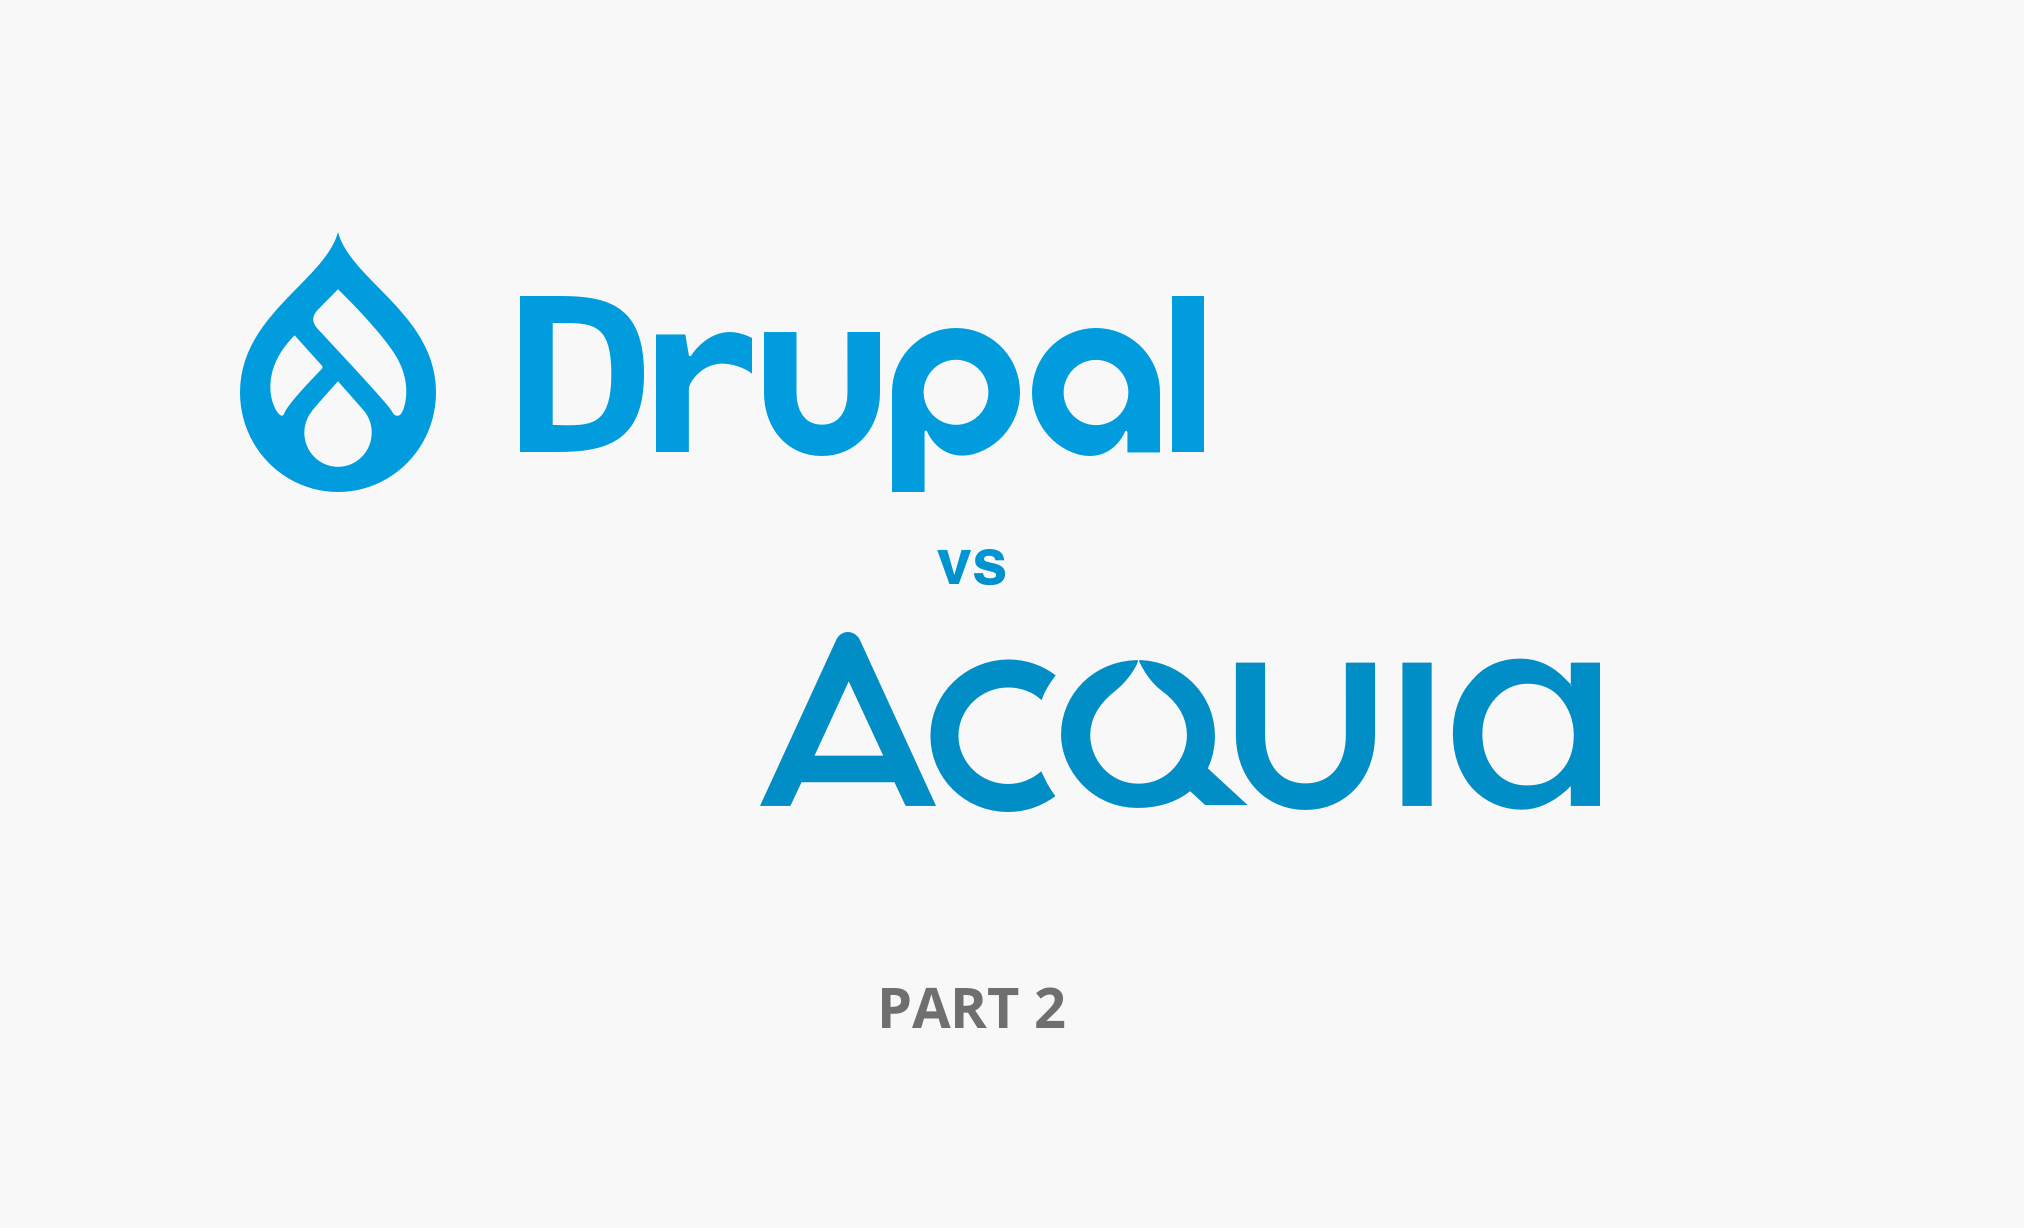 Drupal vs Acquia part 2